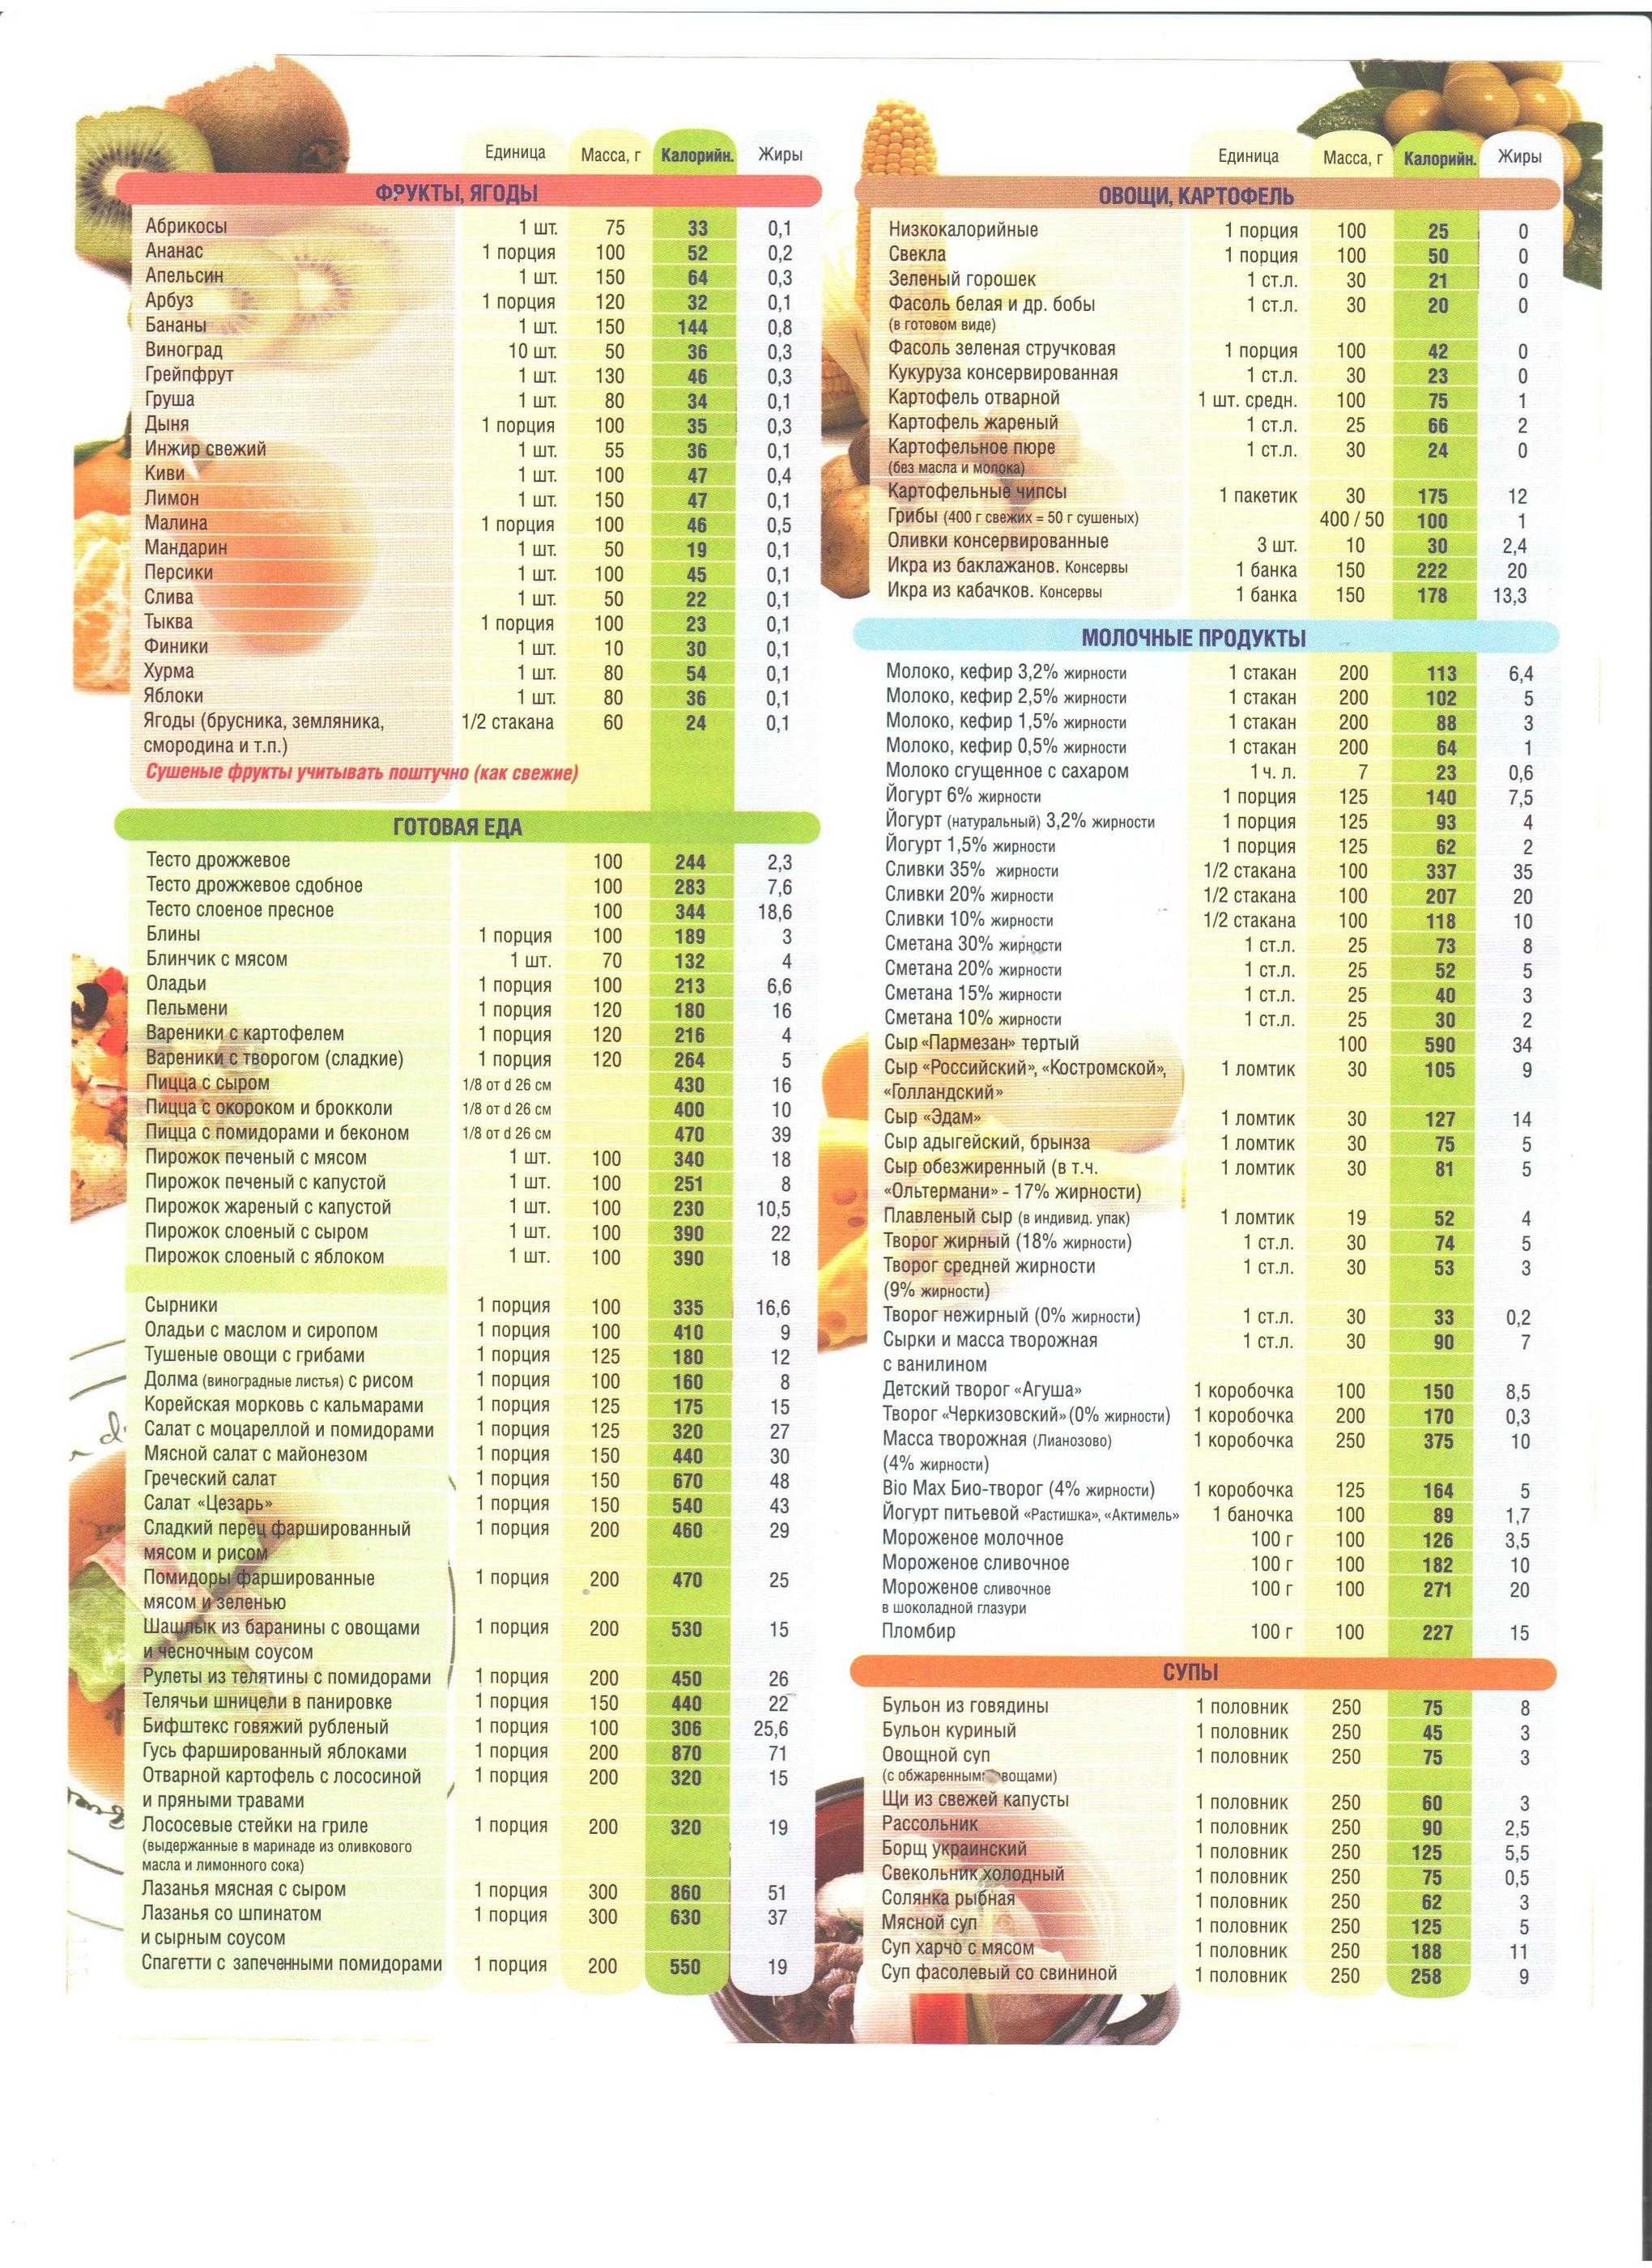 Самые низкокалорийные продукты для похудения - список